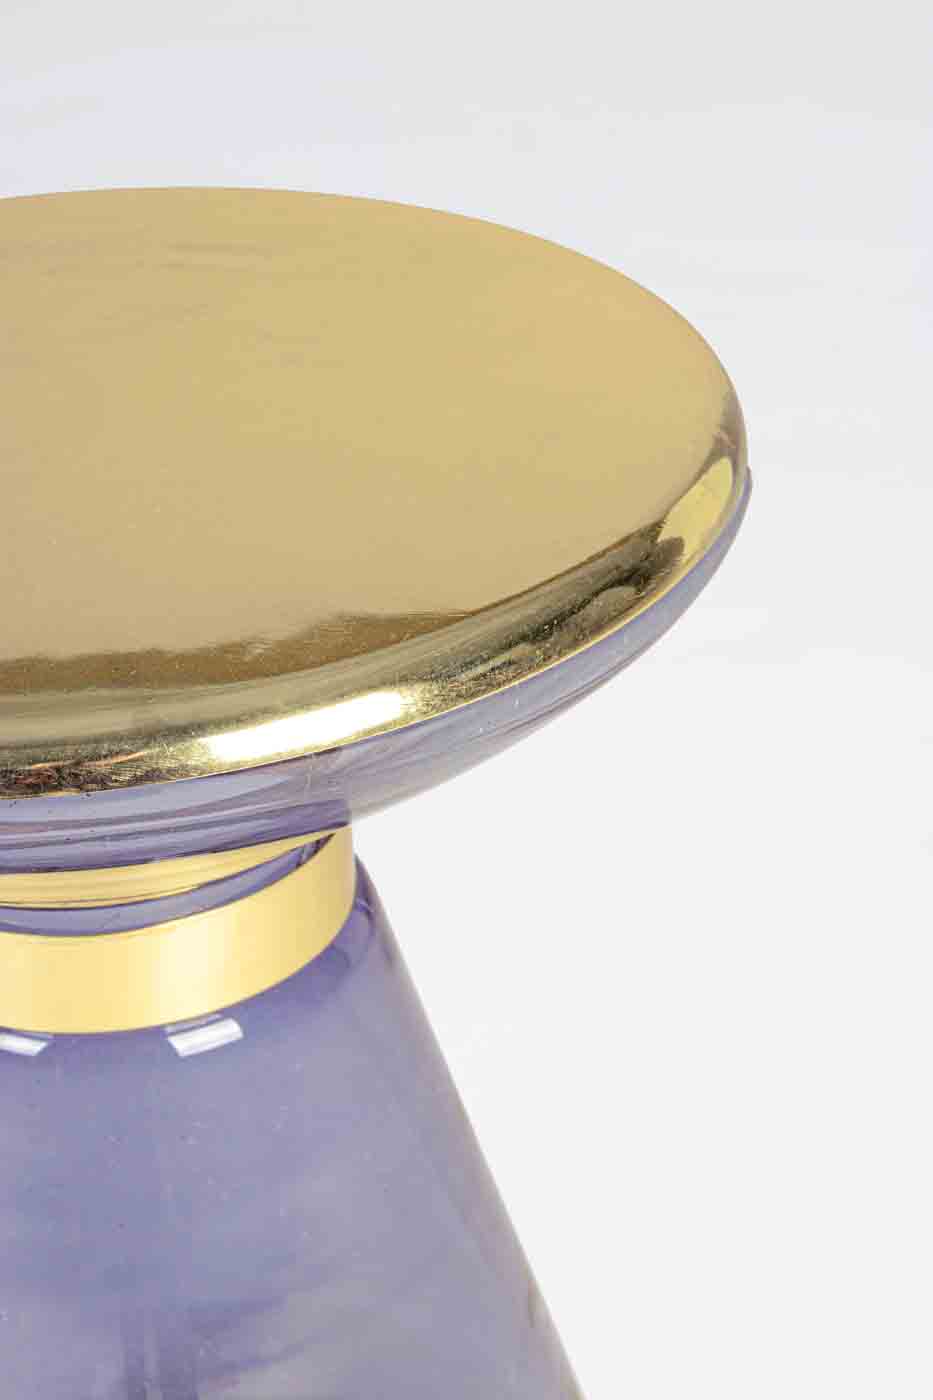 Der Beistelltisch Meriel hat ein modernes Design. Gefertigt wurde der Tisch aus Glas, die Oberfläche ist aus Messing vergoldetem Metall. Der Tisch hat einen grauen Farbton.